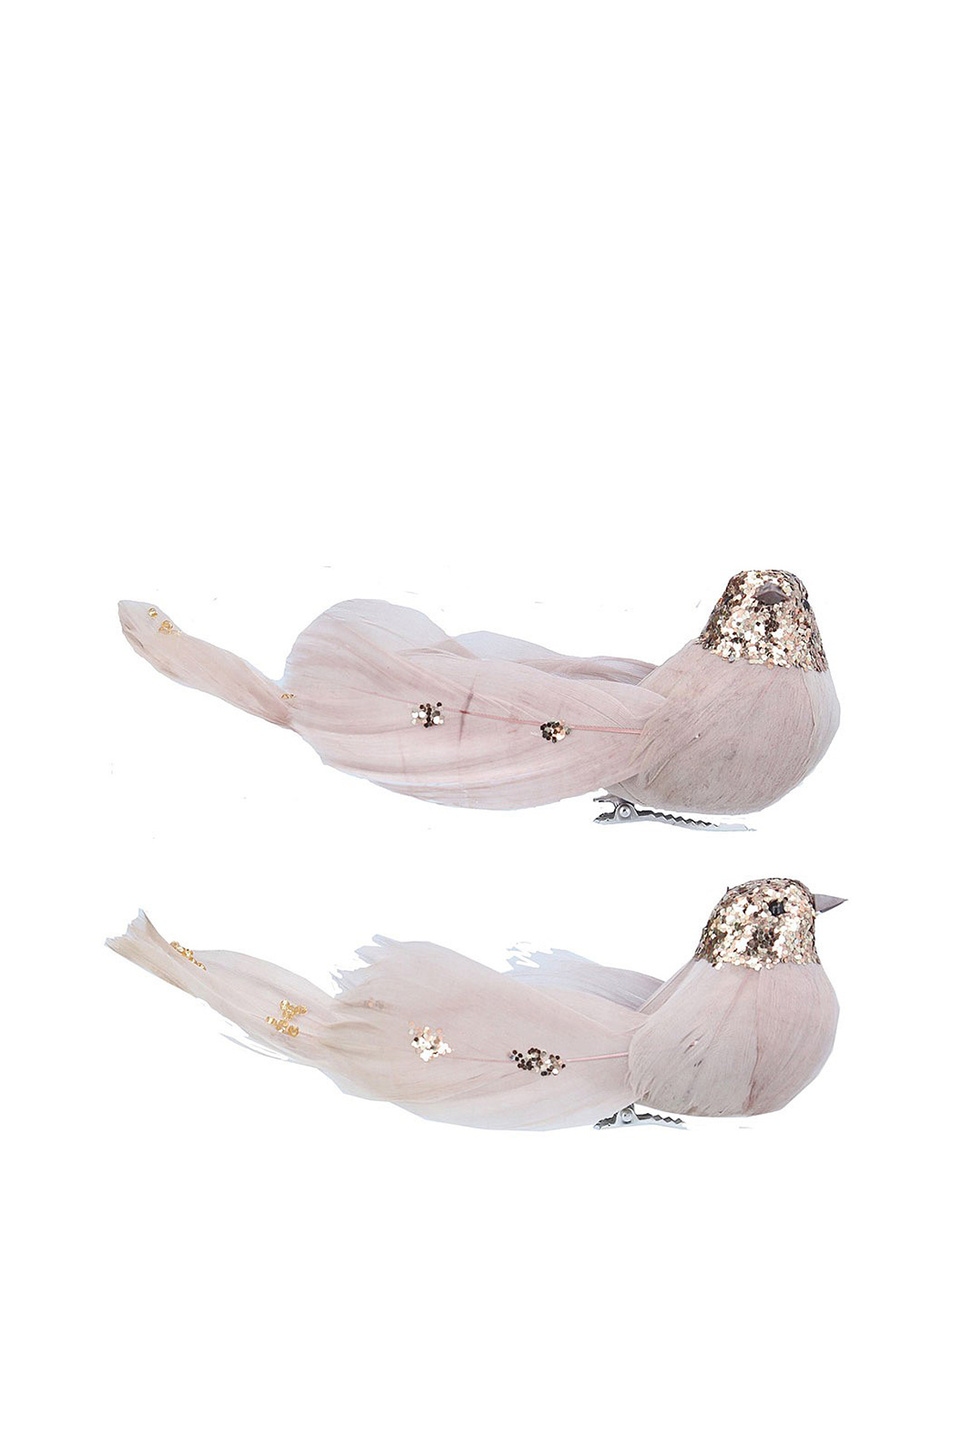 Не имеет пола Gisela Graham Елочная игрушка на клипсе "Птица пыльно-розовая" 5 см в ассортименте (цвет ), артикул 14074 | Фото 1